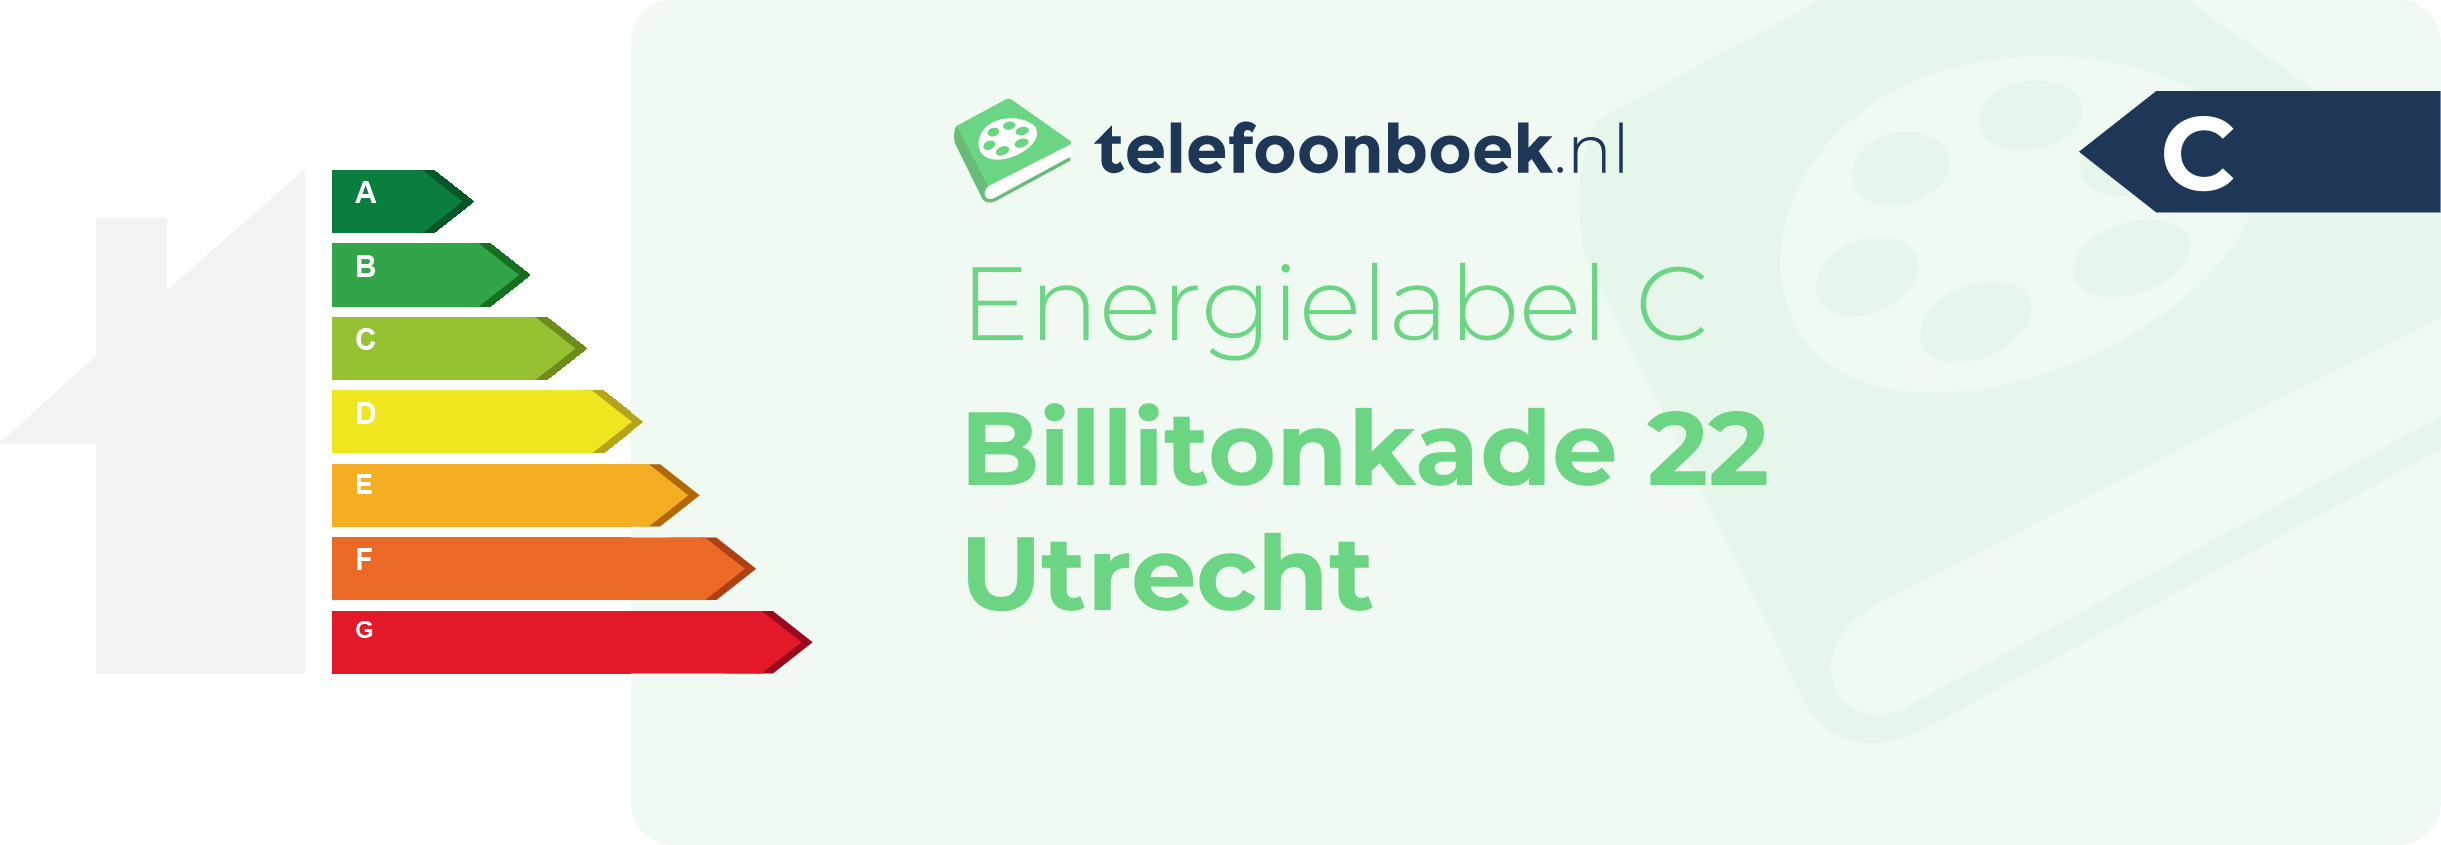 Energielabel Billitonkade 22 Utrecht